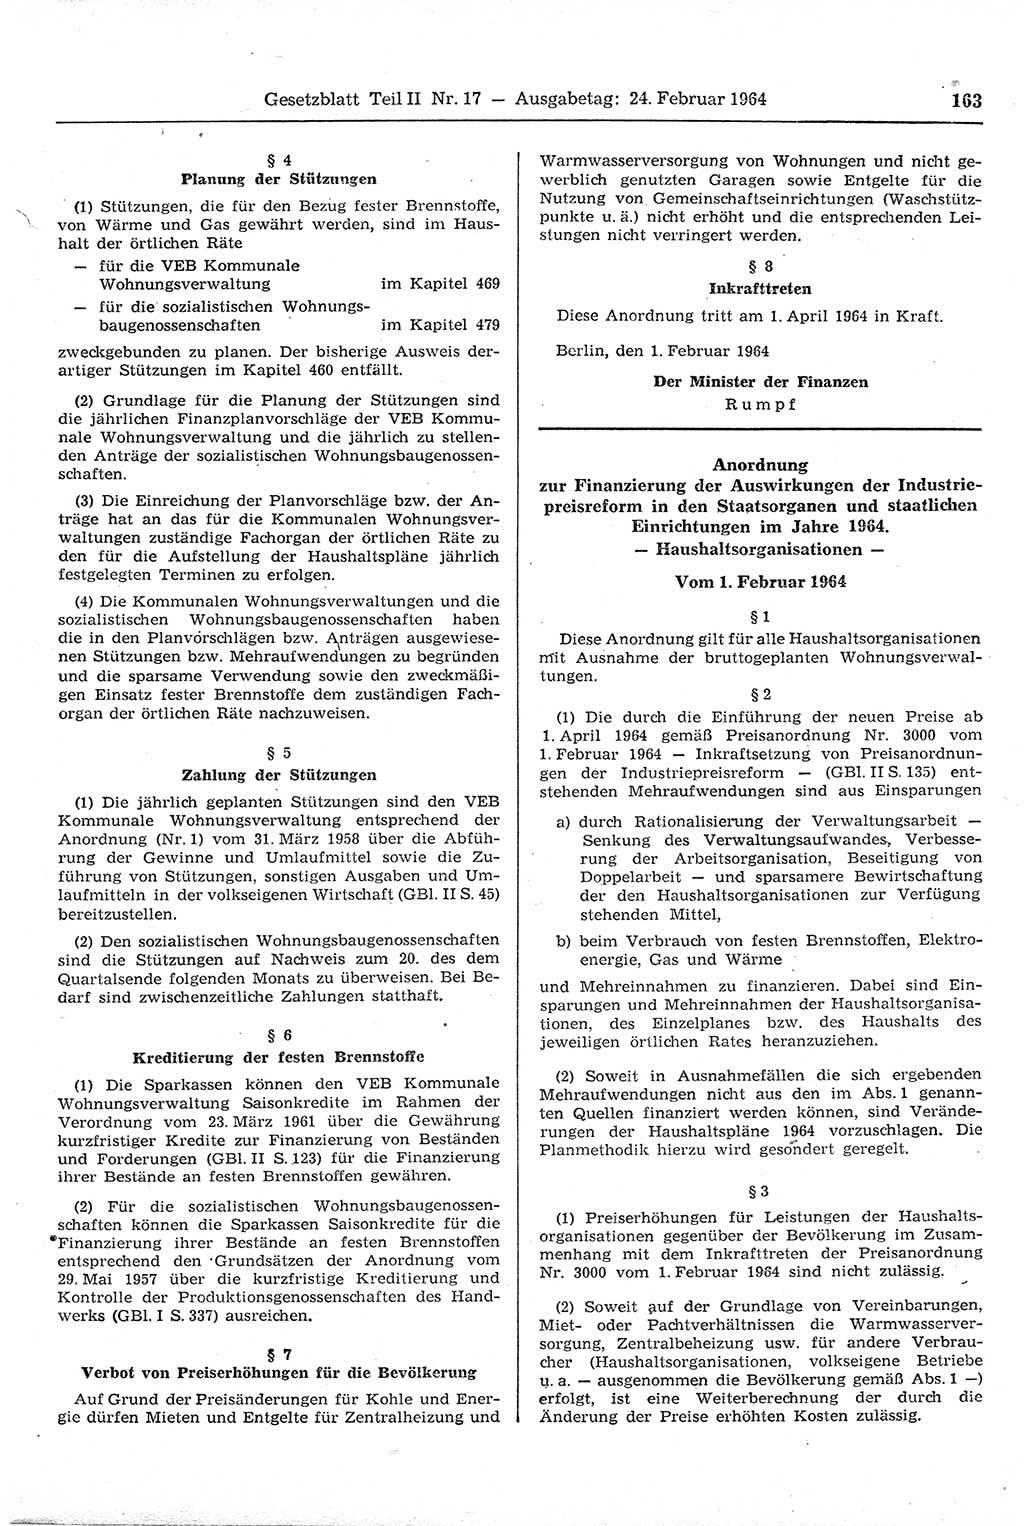 Gesetzblatt (GBl.) der Deutschen Demokratischen Republik (DDR) Teil ⅠⅠ 1964, Seite 163 (GBl. DDR ⅠⅠ 1964, S. 163)